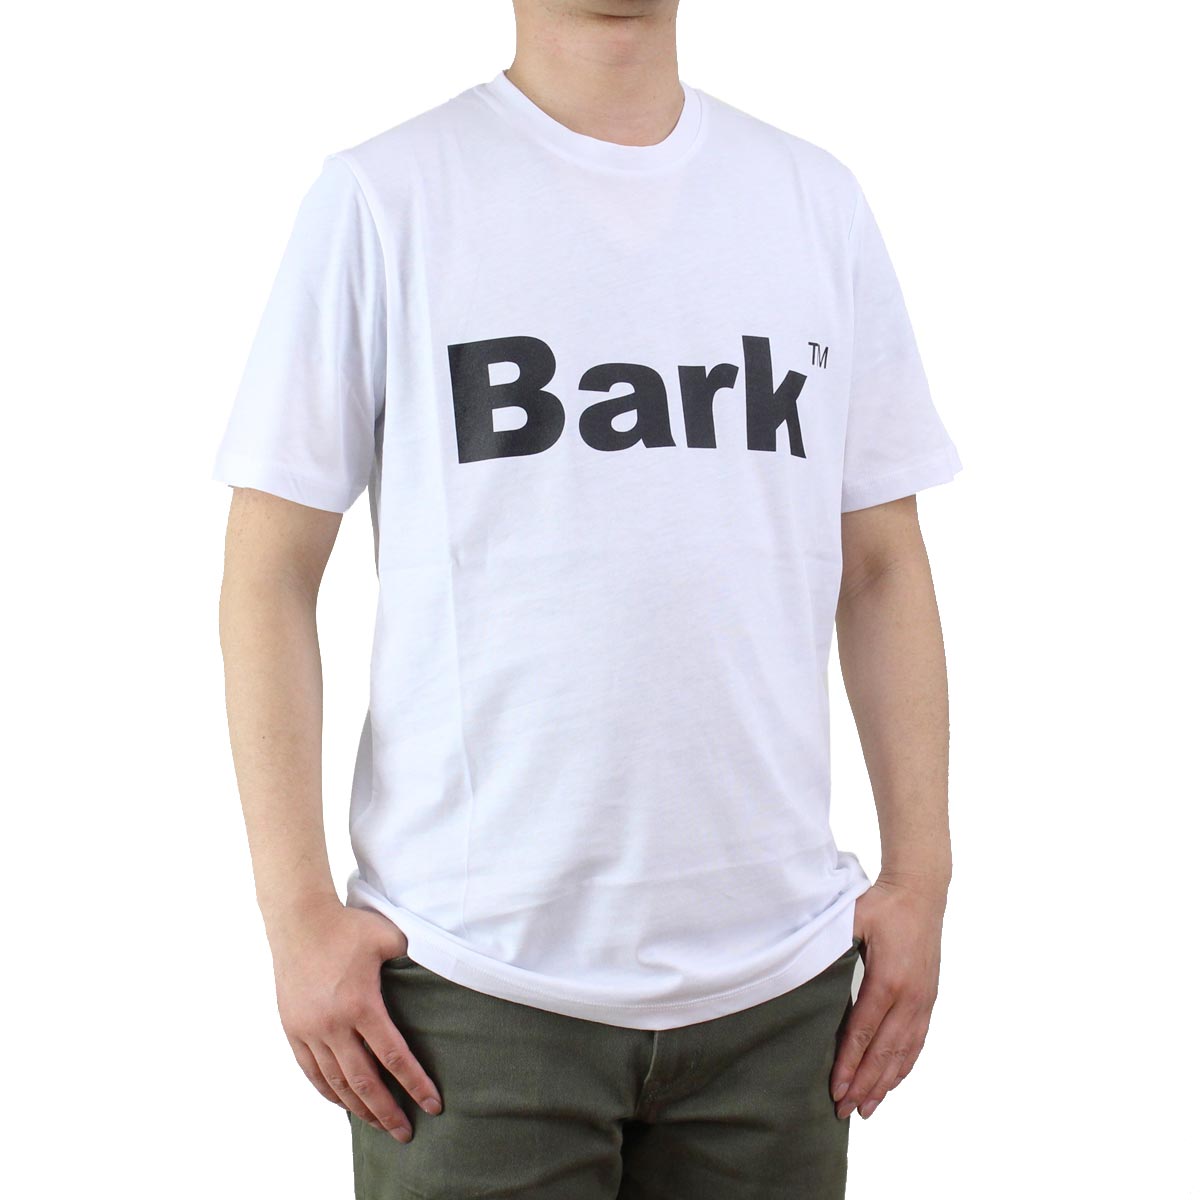 バーク Bark  メンズ クルーネック 半袖 ロゴ Tシャツ 71B8715 281 OFF-WHITE ホワイト系  メンズ ティーシャツ ティーシャツ T shirt OLS-4  ts-01